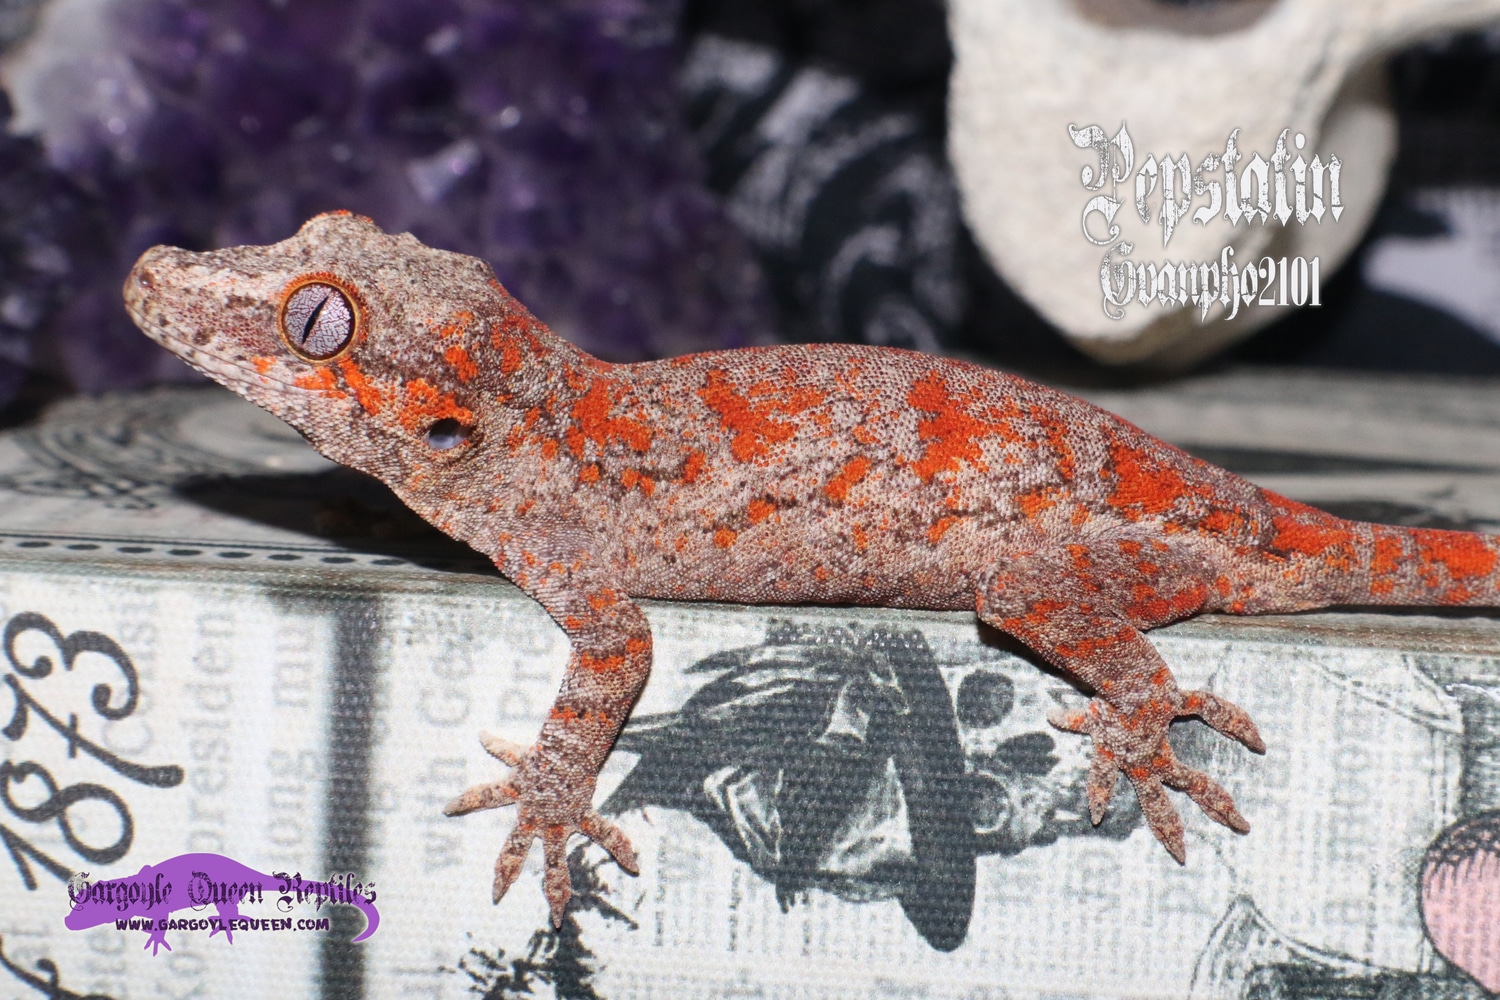 "B-Pepstatin" Red Super Blotch Gargoyle Gecko by Gargoyle Queen Reptiles